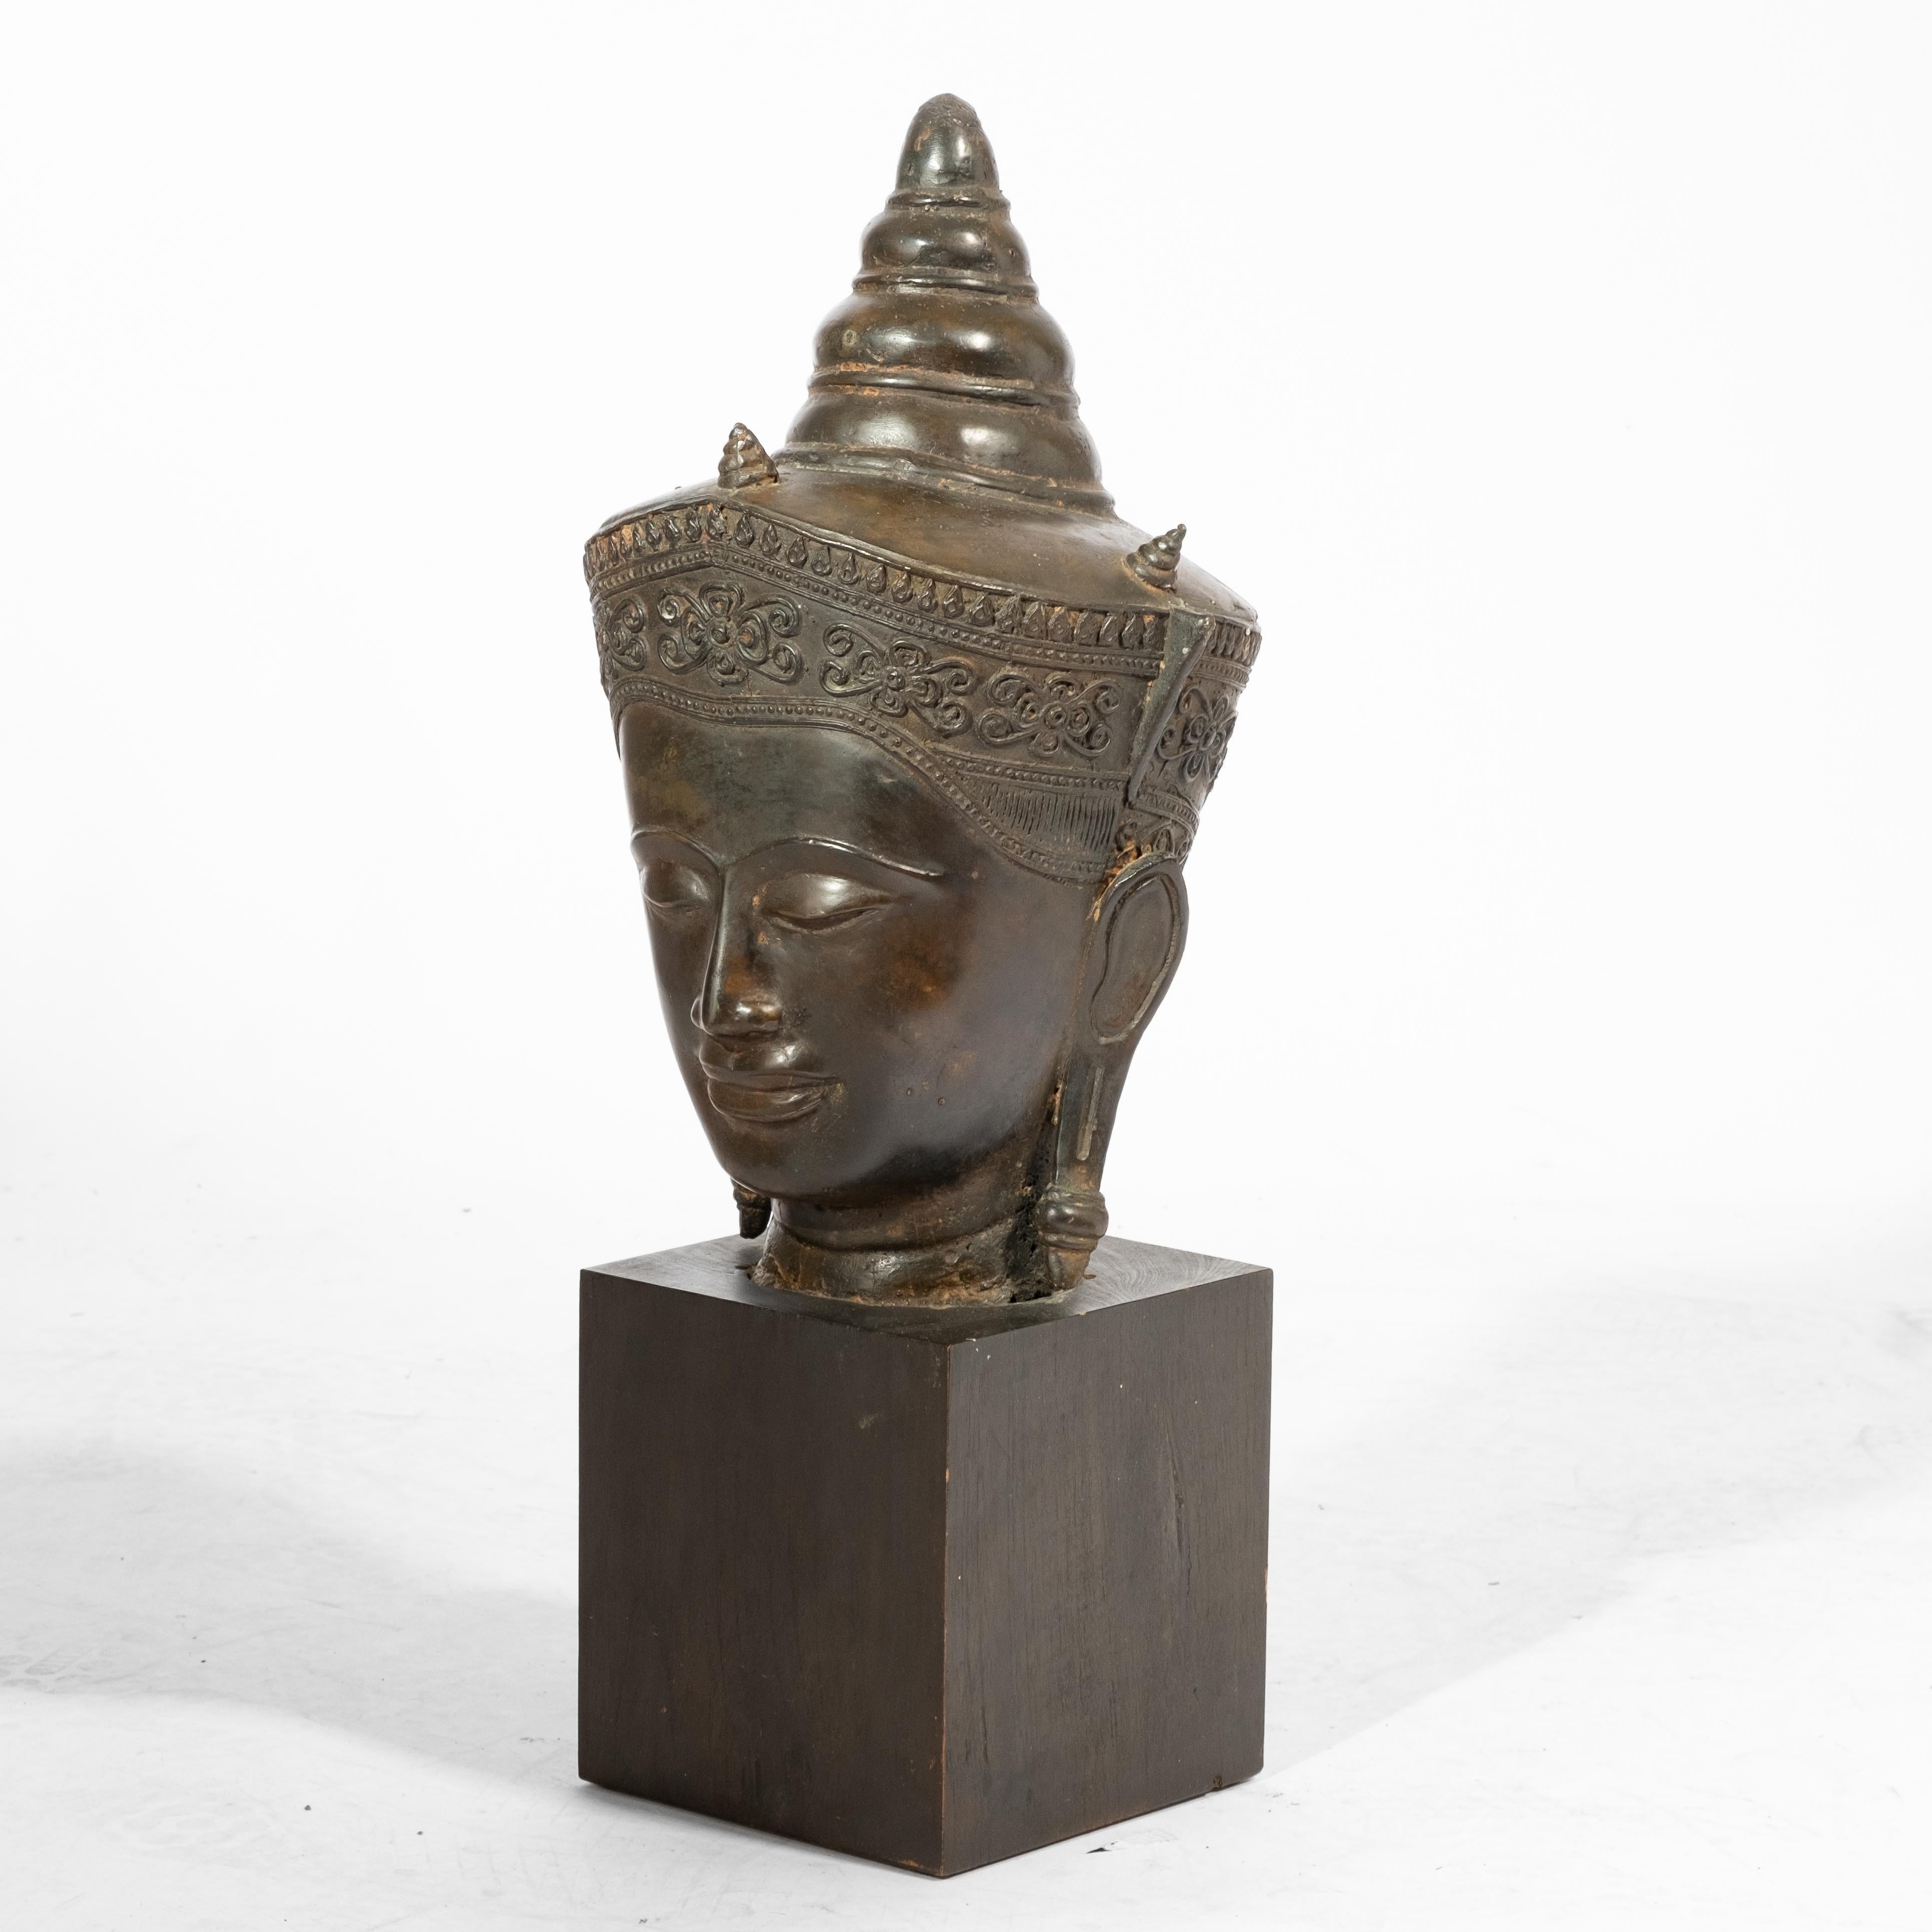 Grande tête de bouddha asiatique en bronze, probablement 16e/17e siècle  brun foncé, patine variée, 14.25 